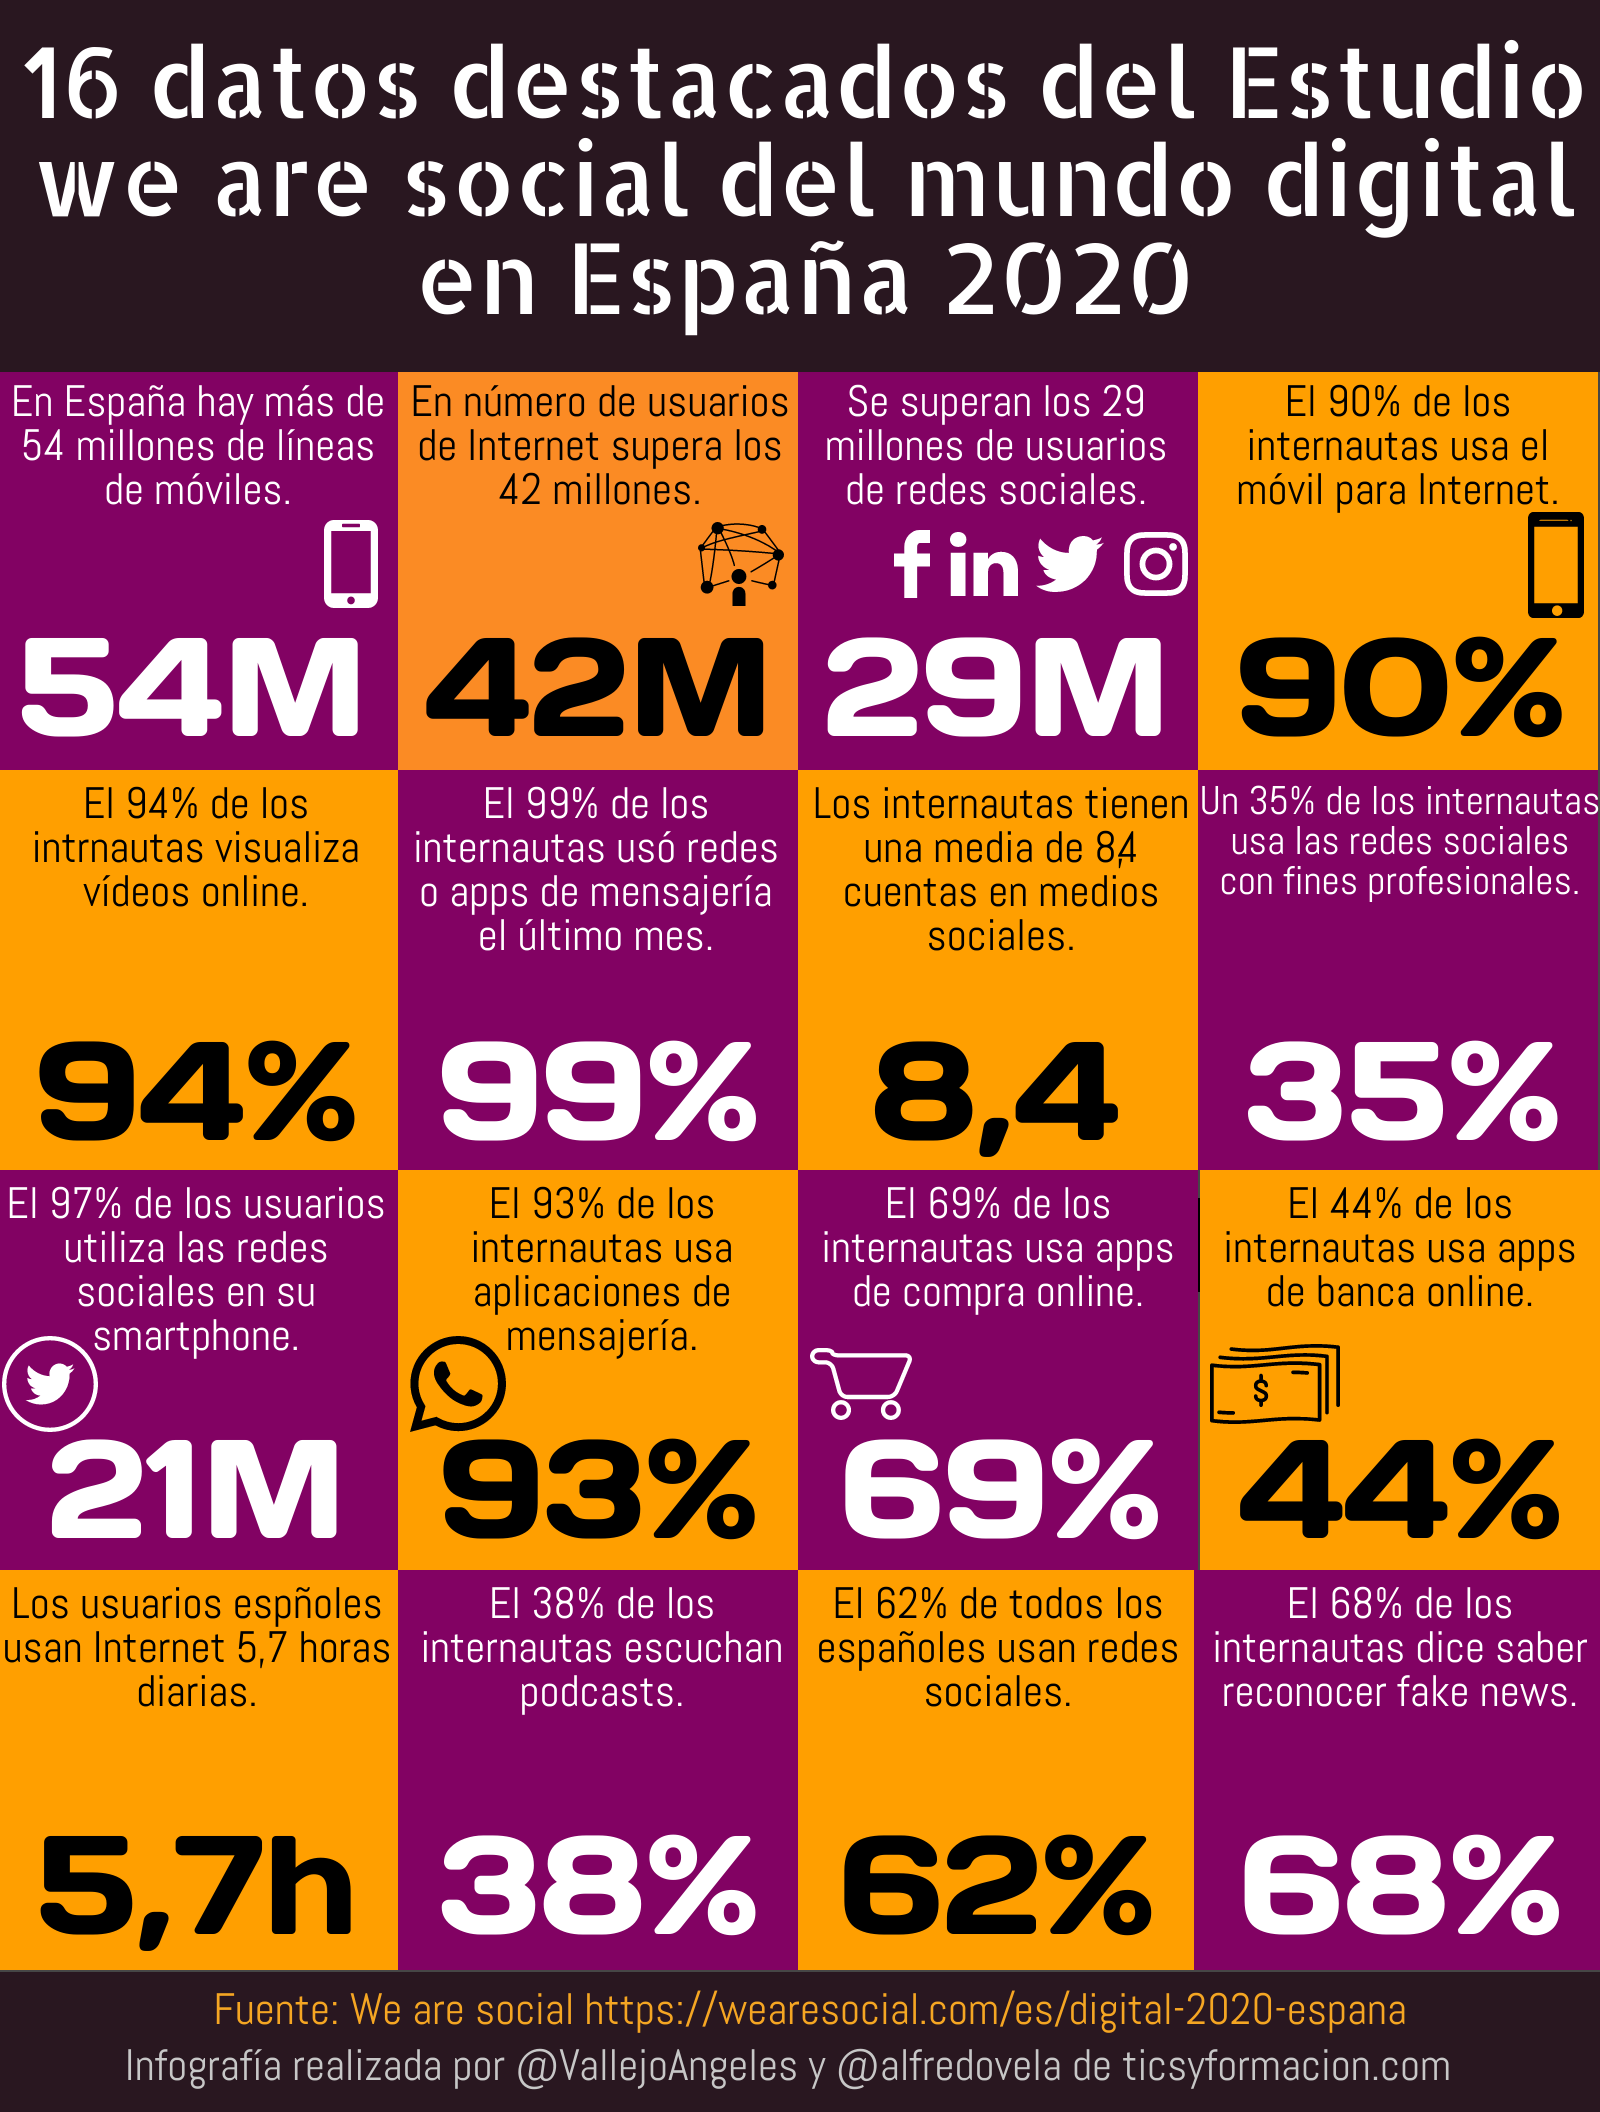 16 datos destacados del Estudio we are social del mundo digital en España 2020 #infografia #infographic